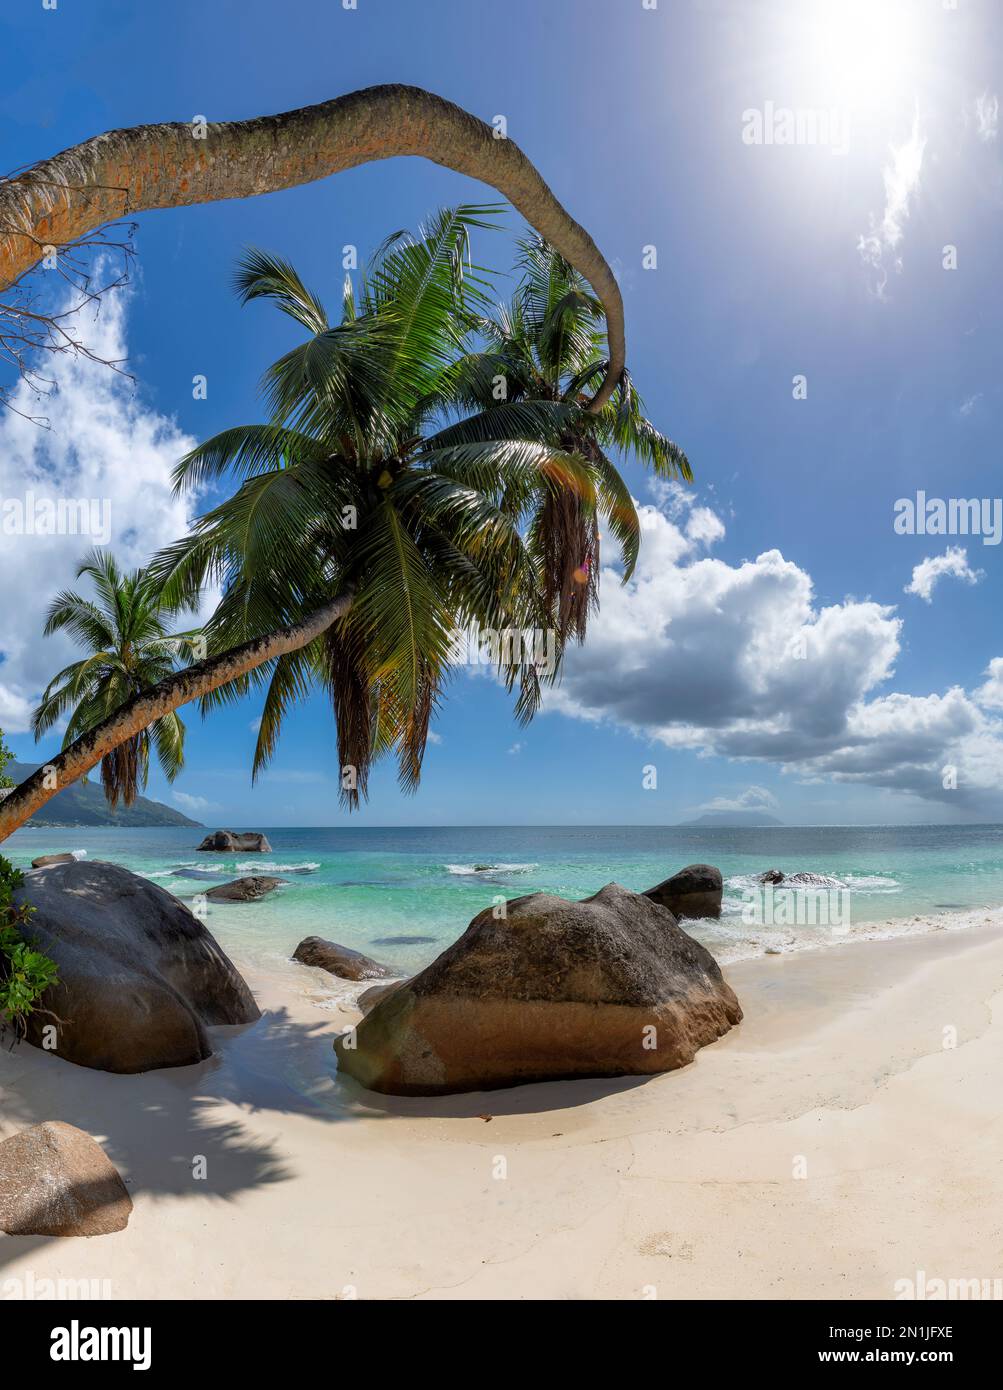 Palmiers Coco, magnifiques rochers et mer tropicale à Sunny plage tropicale dans l'île paradisiaque Banque D'Images